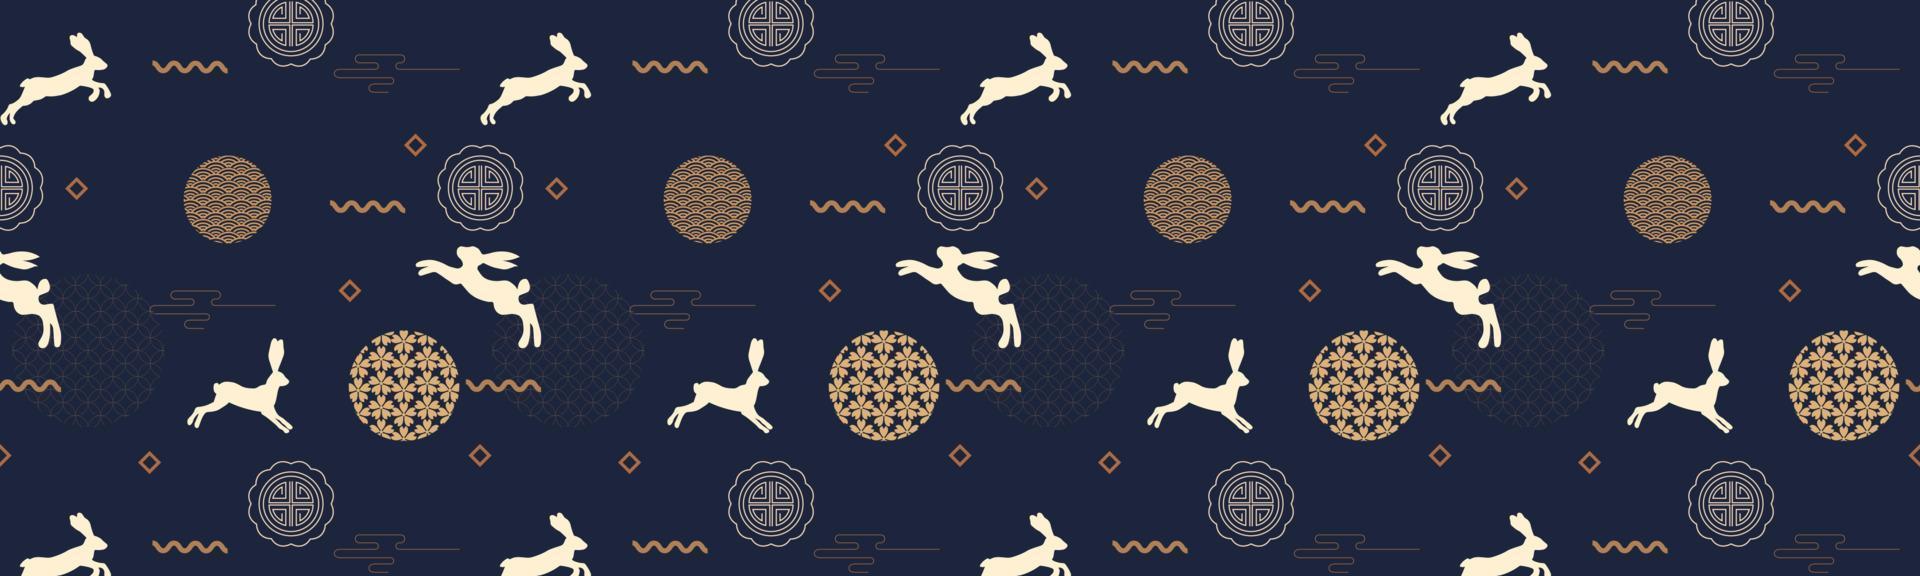 bannière carrée du festival de la mi-automne avec des motifs traditionnels, des lapins mignons et des éléments asiatiques sur fond bleu foncé. modèle sans couture. illustration vectorielle vecteur